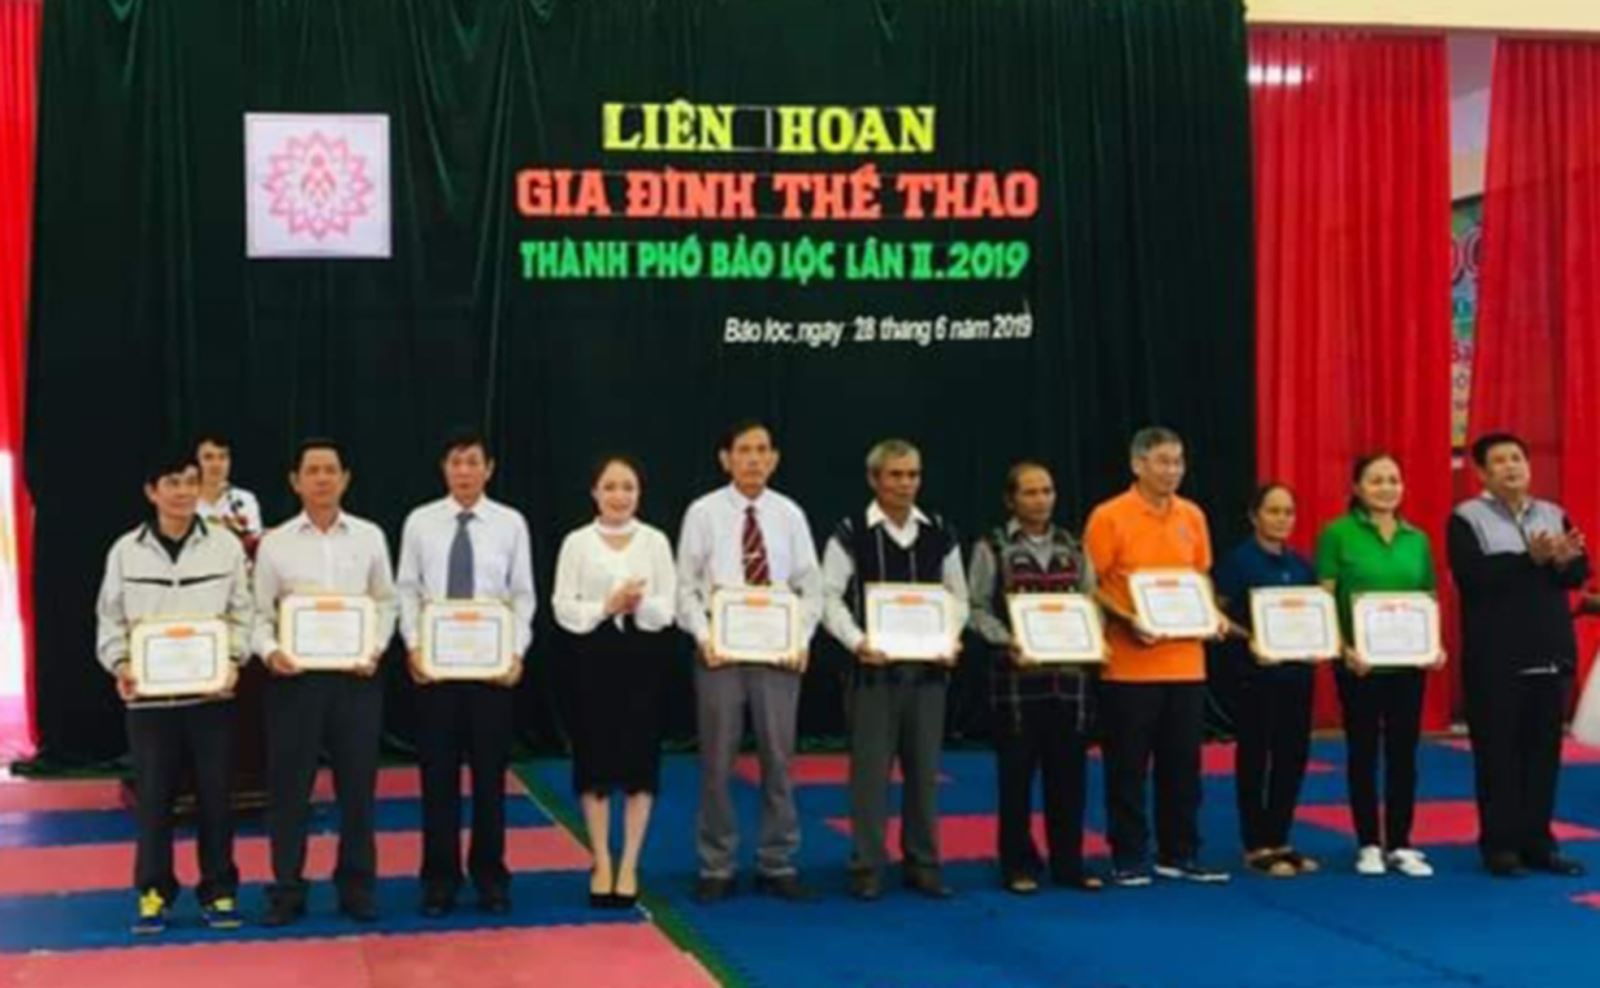 Thành phố Bảo Lộc, Lâm Đồng: Nâng cao nhận thức về vai trò, vị trí, trách nhiệm của gia đình và  cộng đồng trong việc ngăn chặn sự xâm nhập của các tệ nạn xã hội  